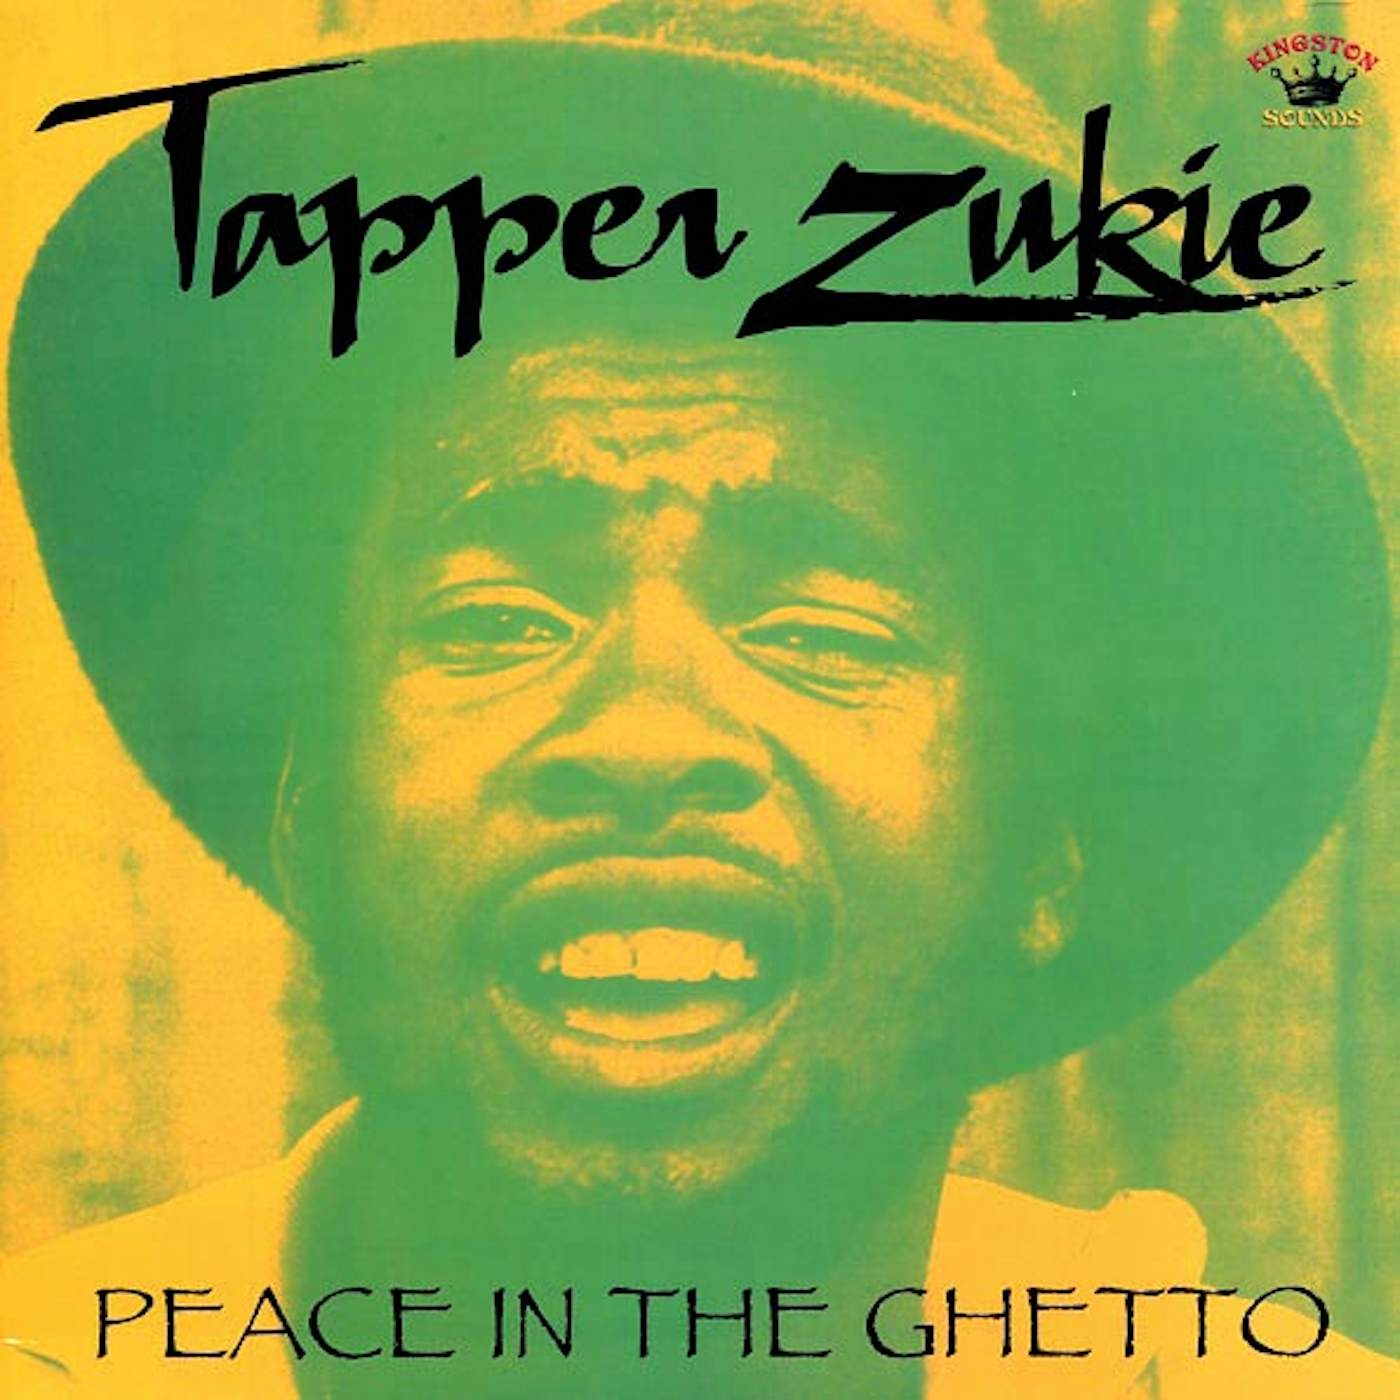 Tappa Zukie  LP -  Peace In The Ghetto (180g) (Vinyl)